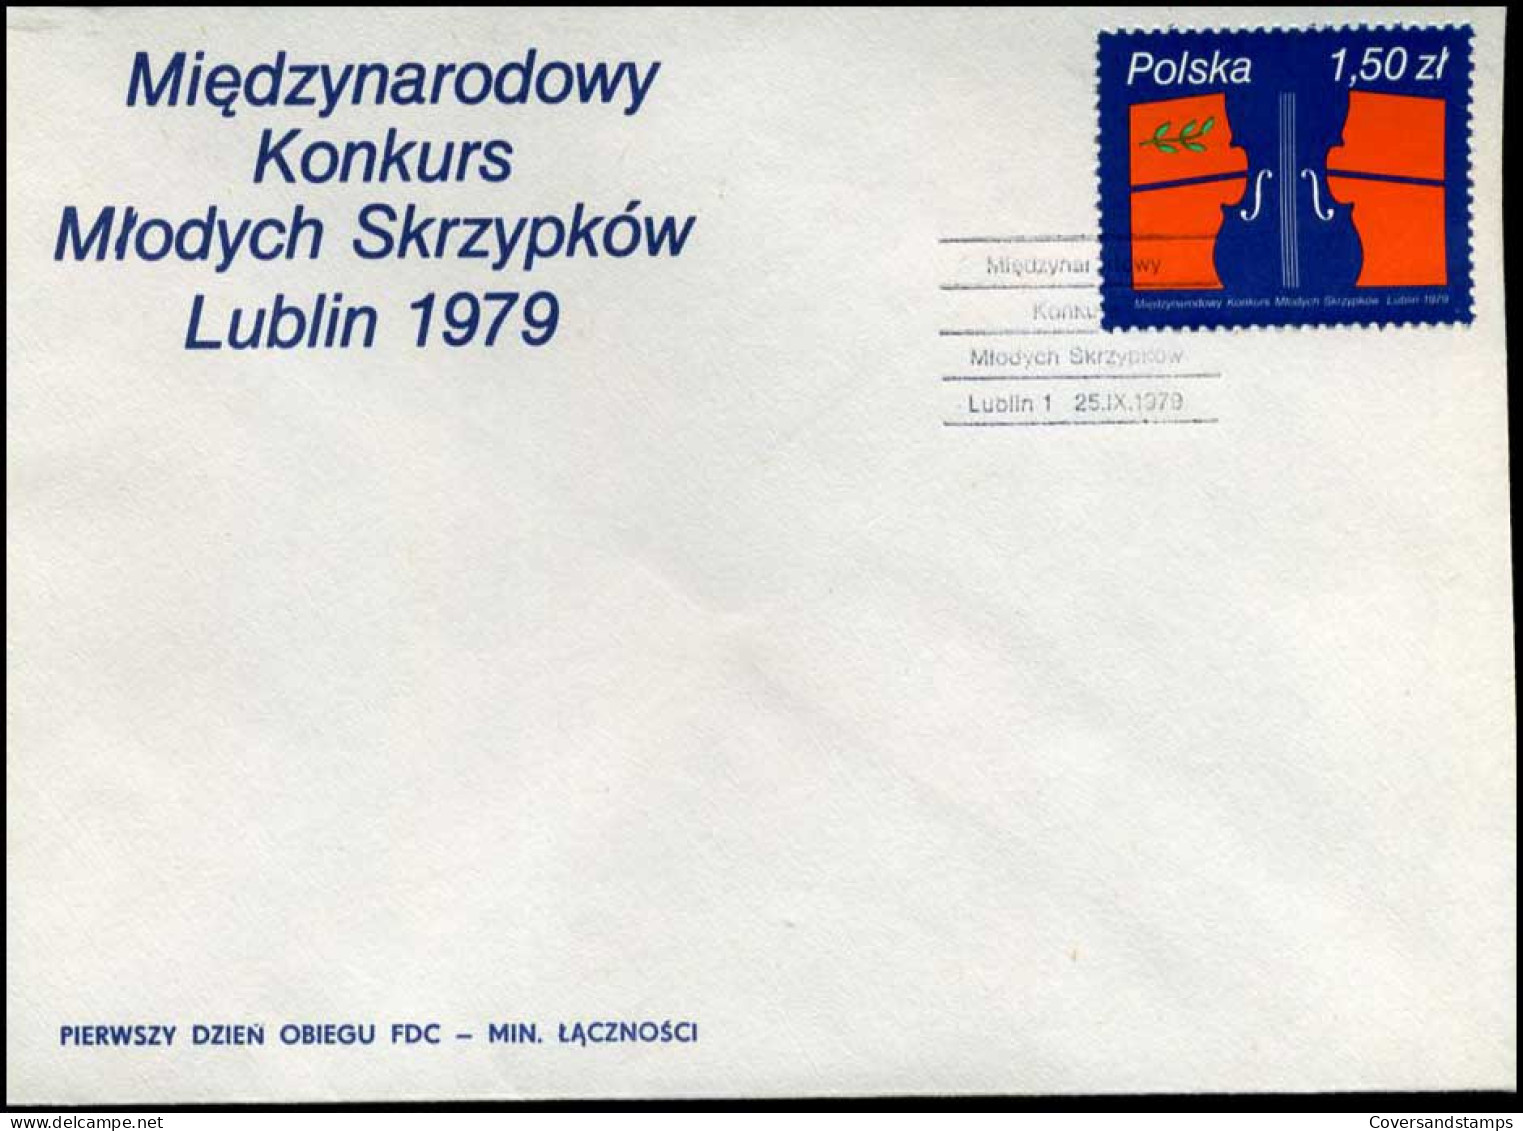 Polen - FDC -  Miedzynarodowy Konkurs Mlodych Skrzypkow Lublin 1979 - FDC